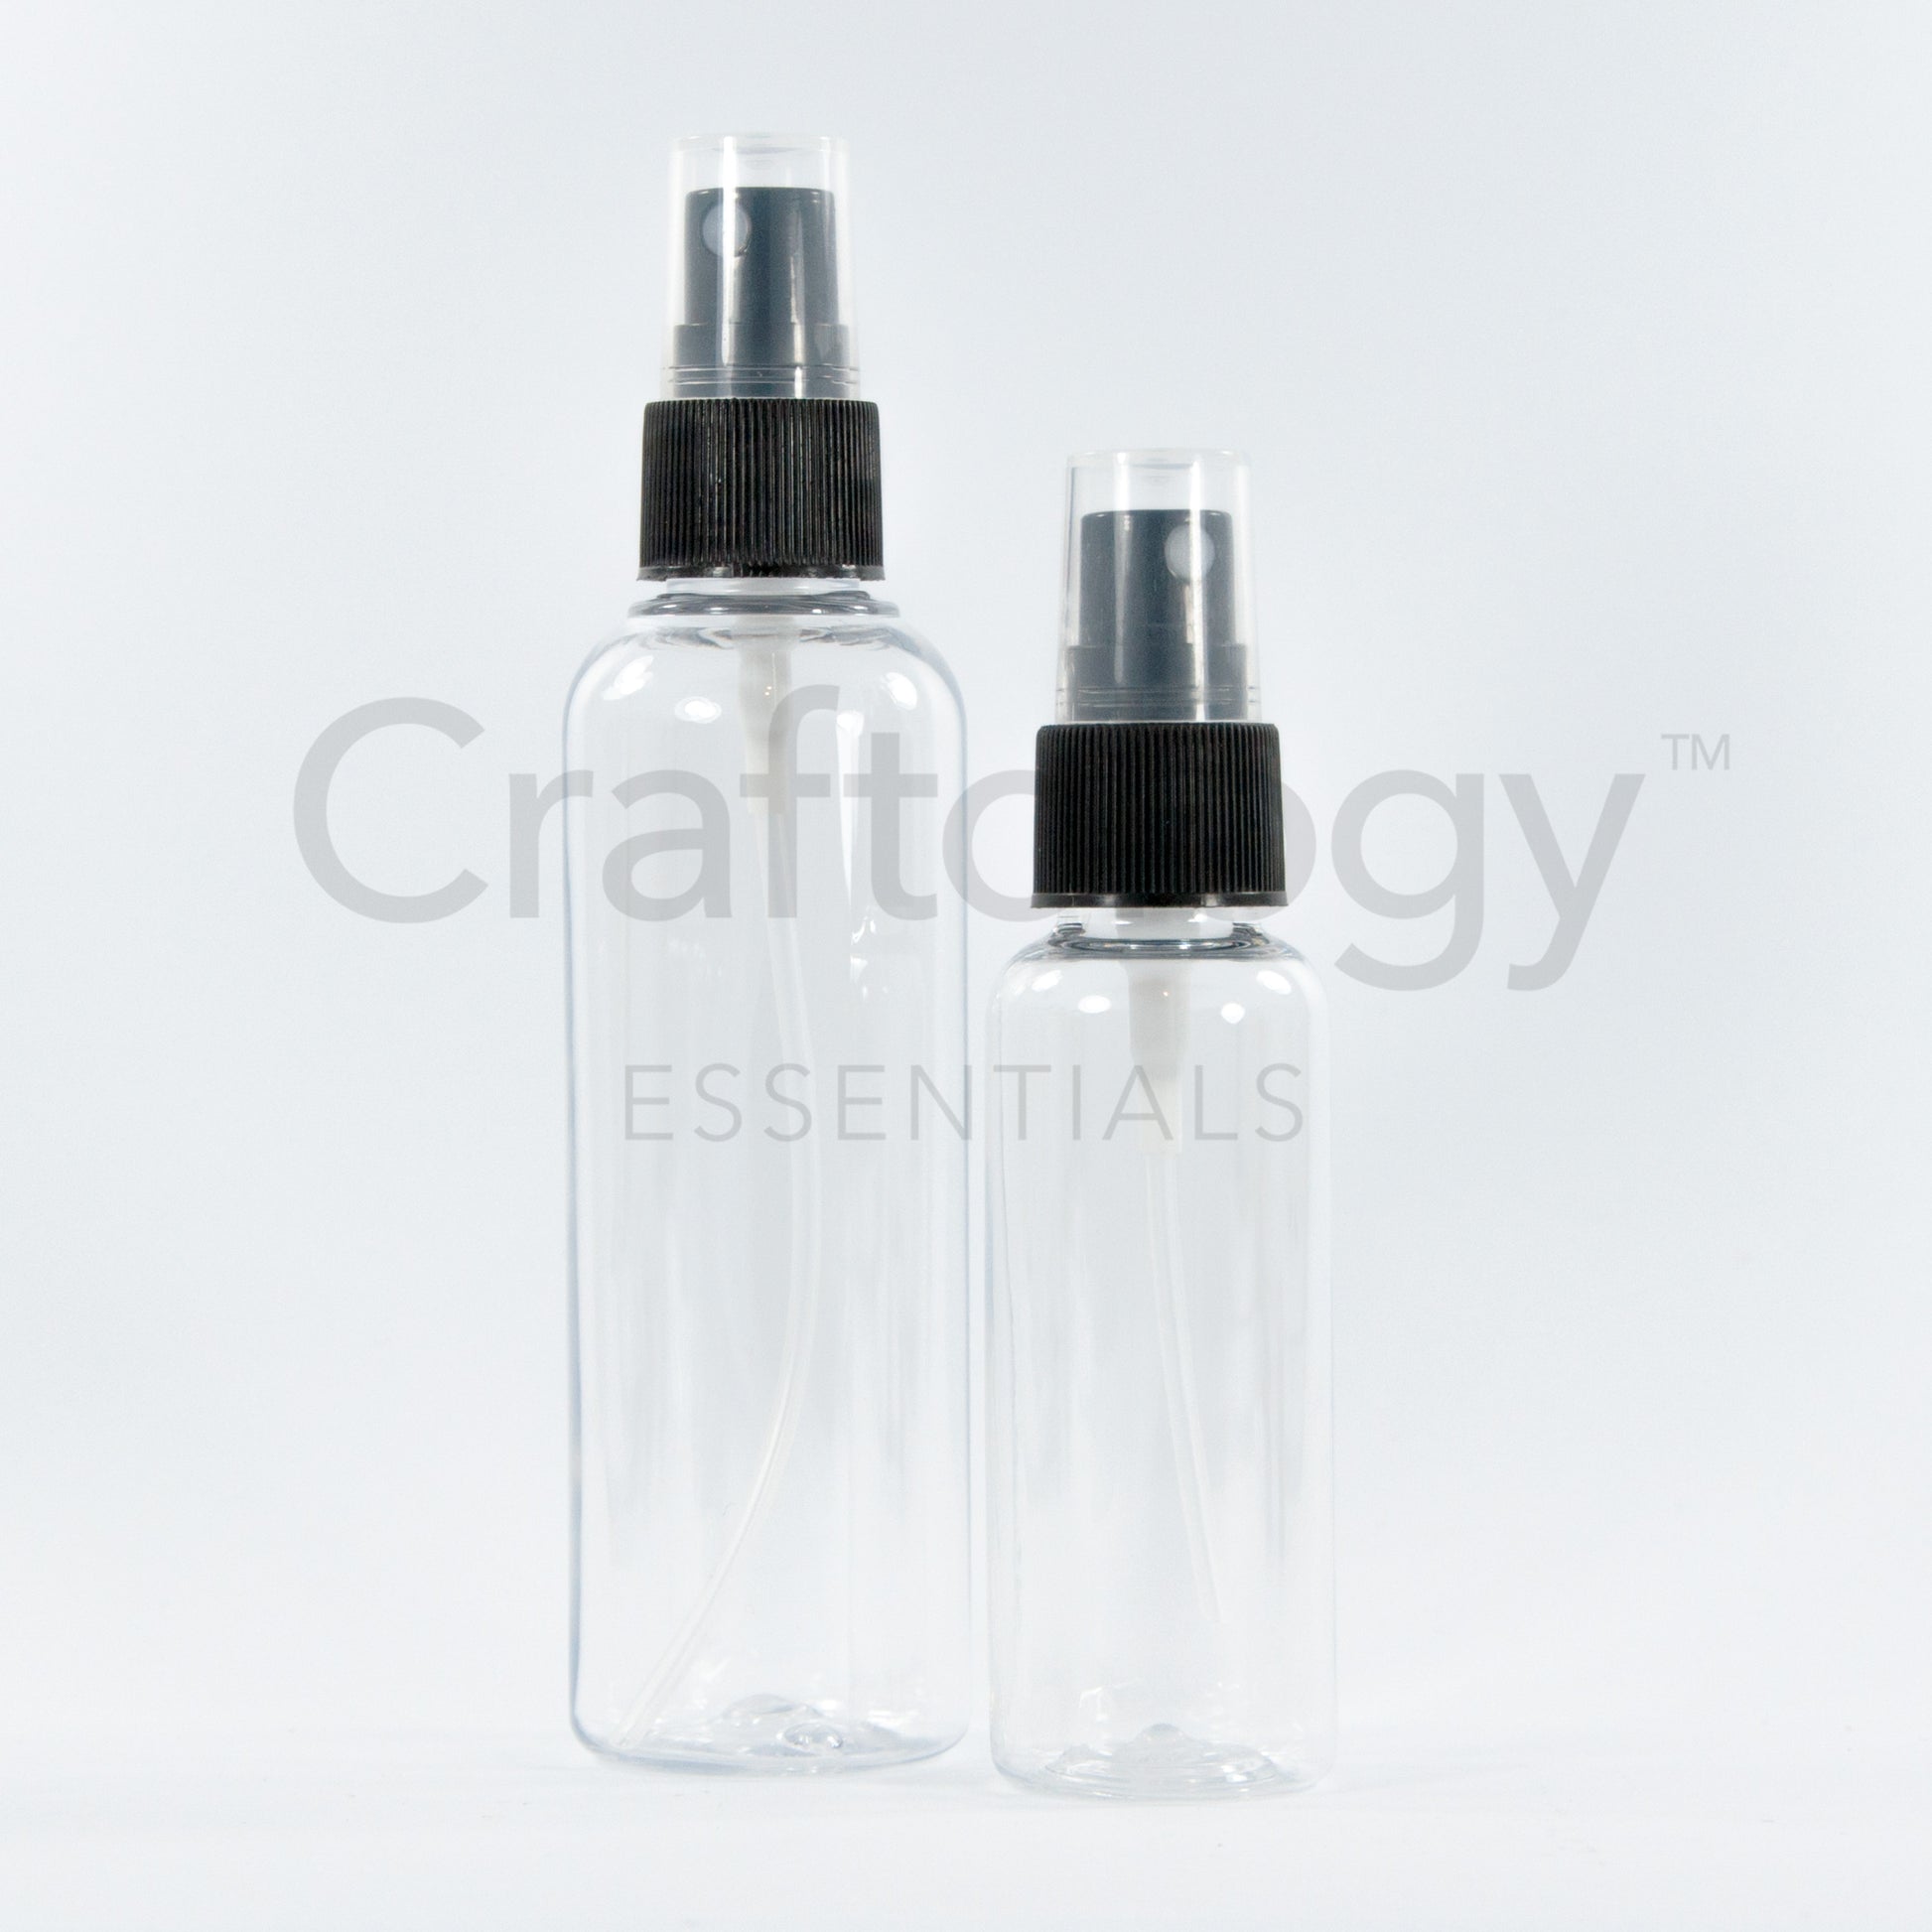 Plastic Spray Bottle (Clear, Black Sprayer) - Craftology Essentials - Philippines